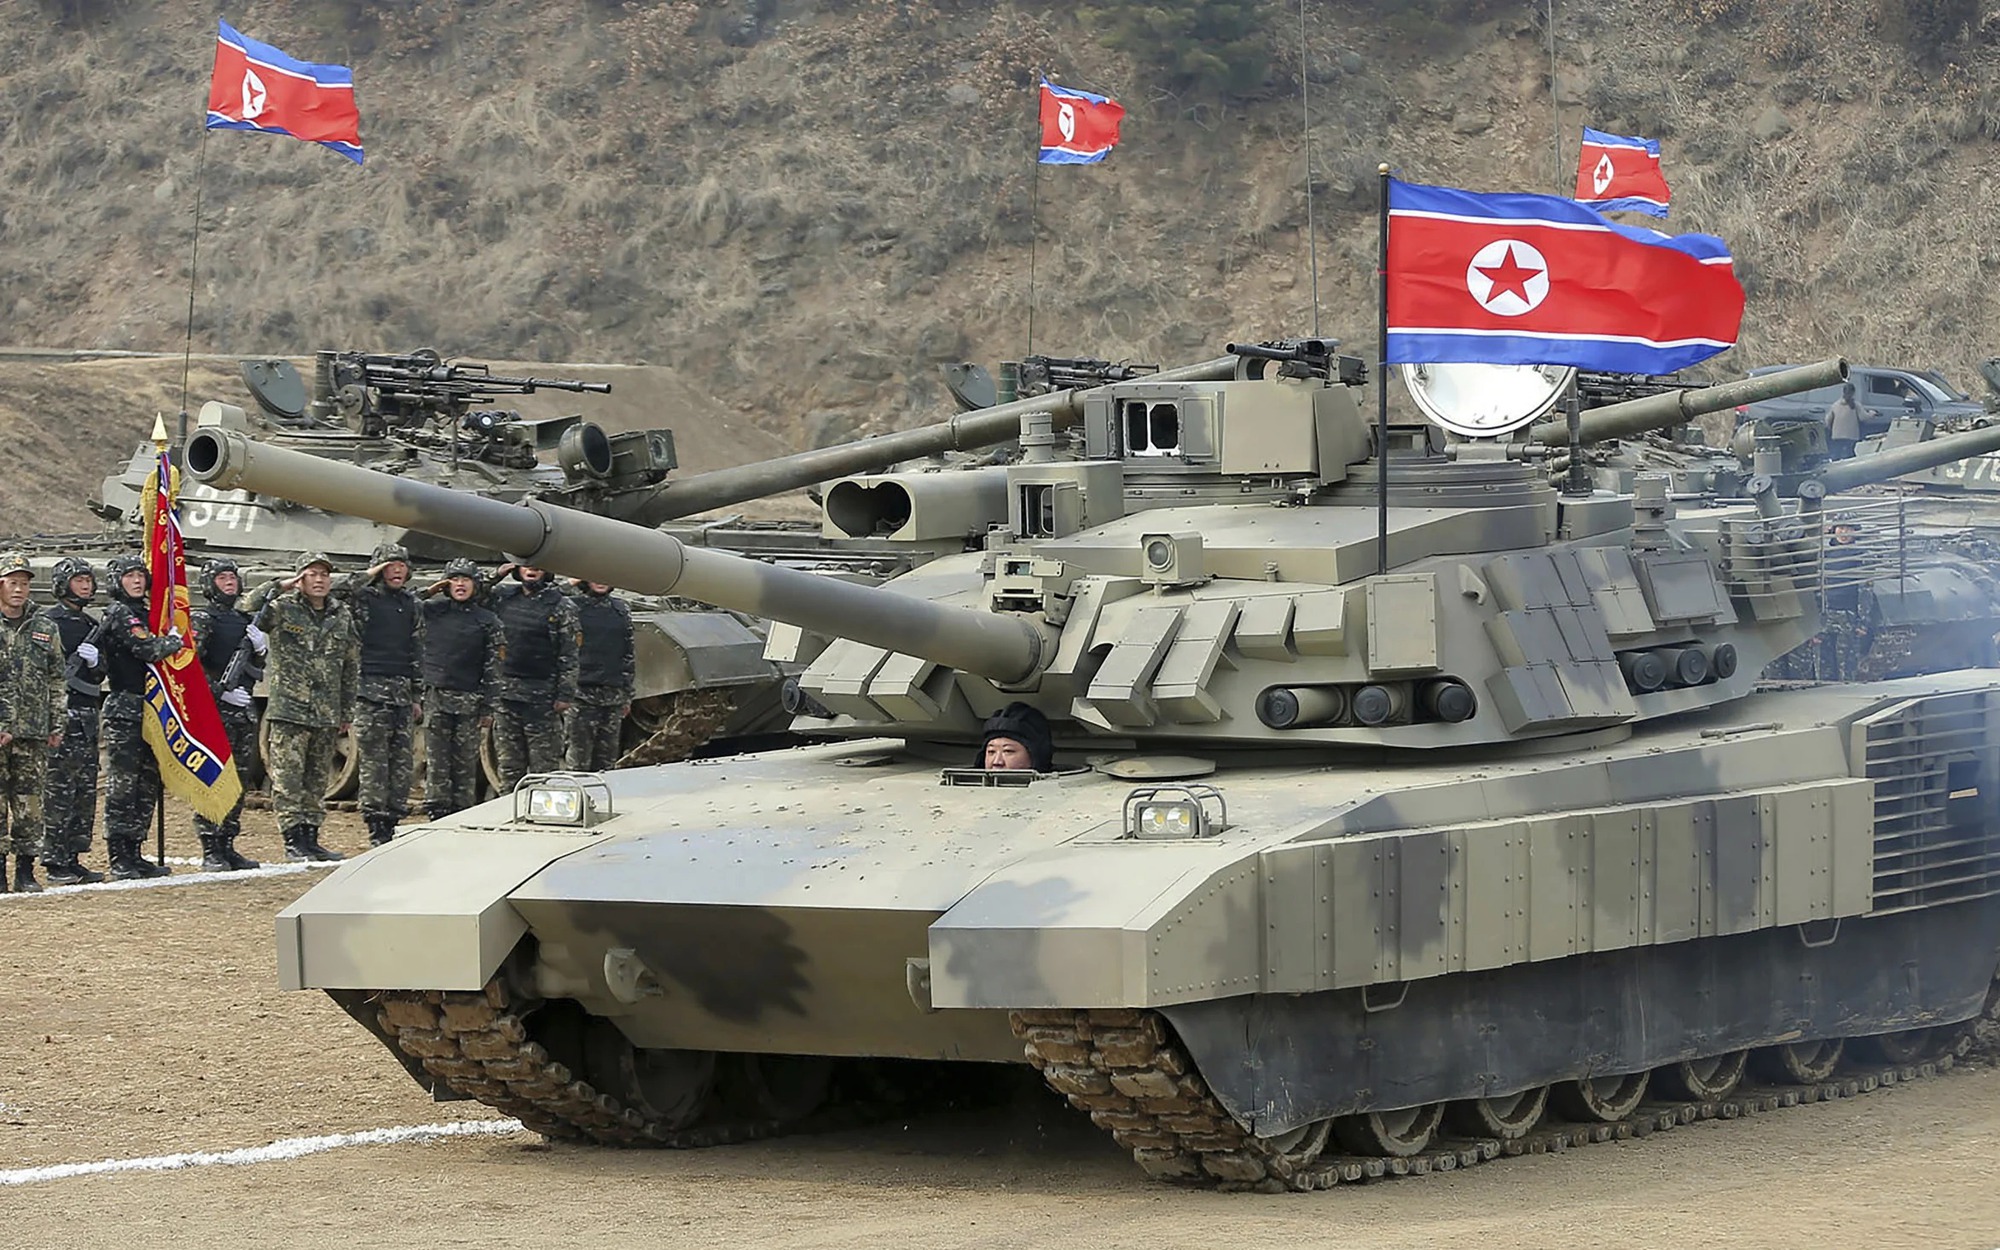 Lúc Mỹ - Hàn tập trận, ông Kim Jong Un tự lái xe tăng 'mạnh nhất thế giới', kêu gọi chuẩn bị chiến tranh